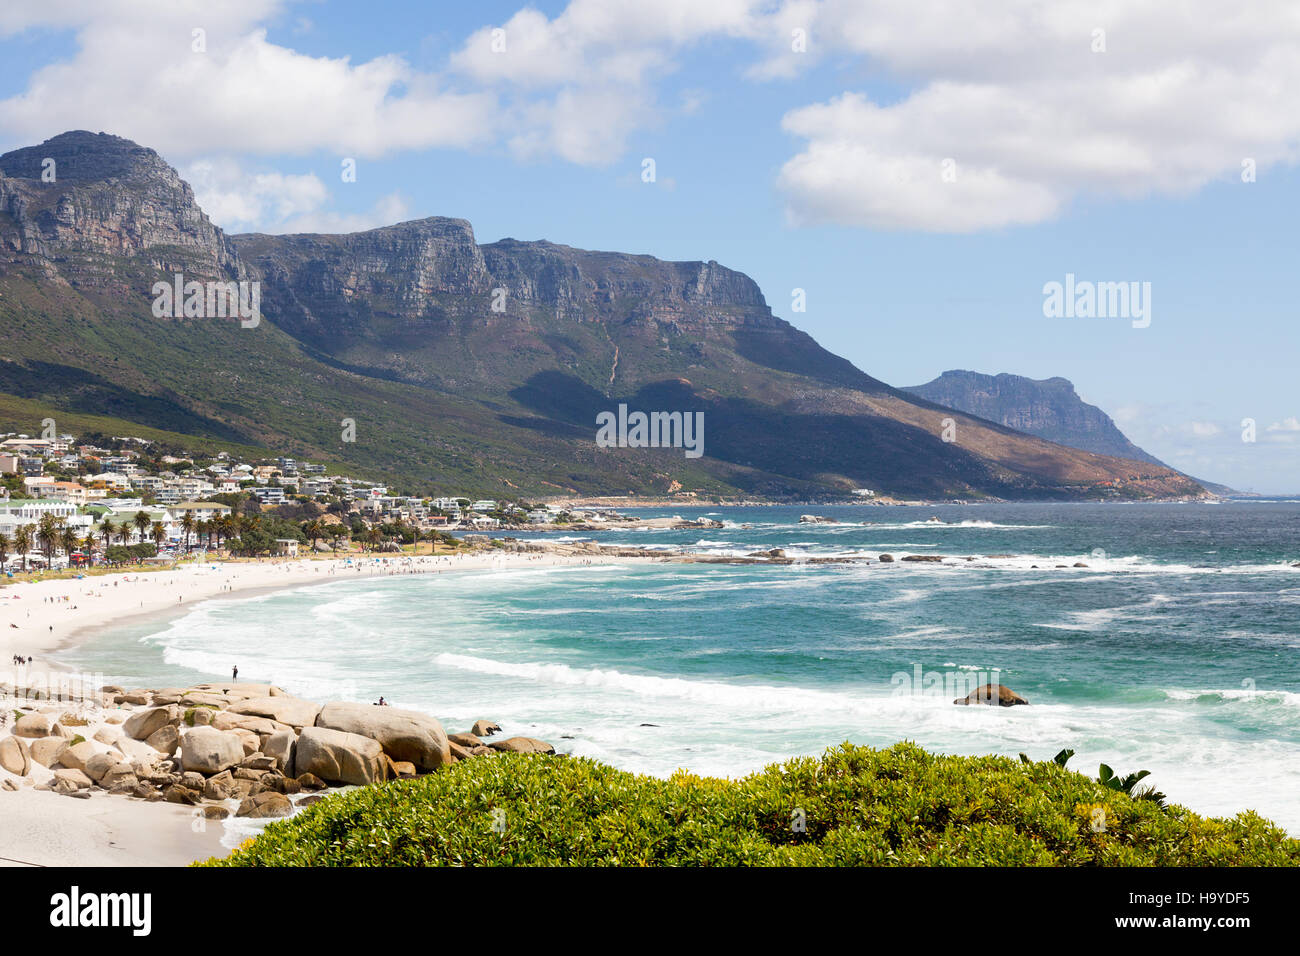 La plage de Camps Bay et les montagnes des Douze Apôtres, Le Cap, Afrique du Sud Banque D'Images